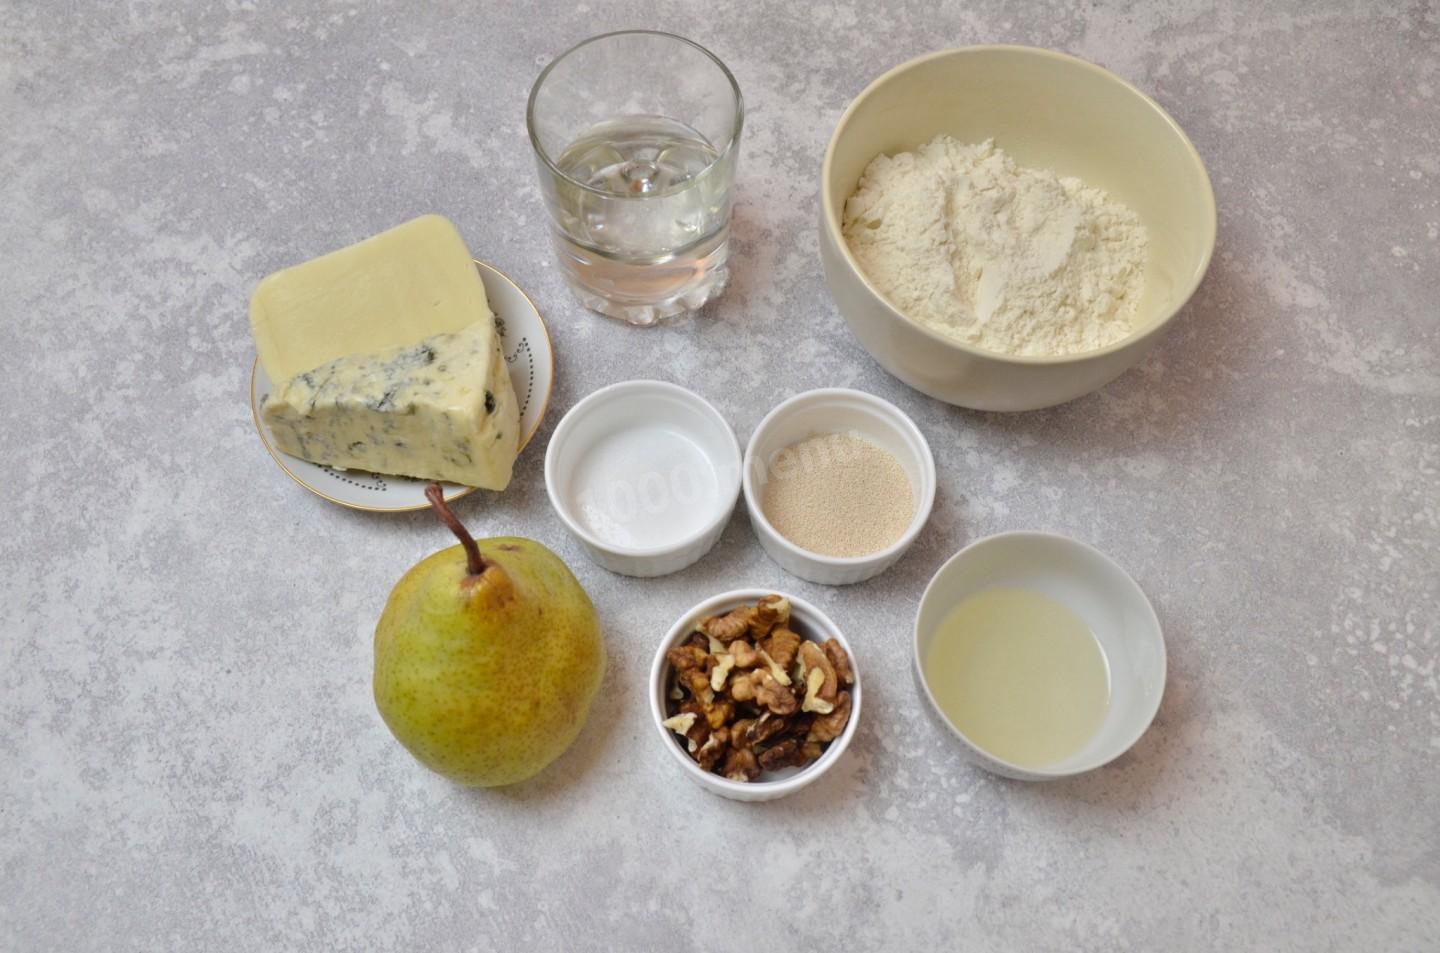 Сырные дрожжи. Шарики из масла и воды. Сыр с плесенью и груша рецепты. Mix yeast in Water on Table.